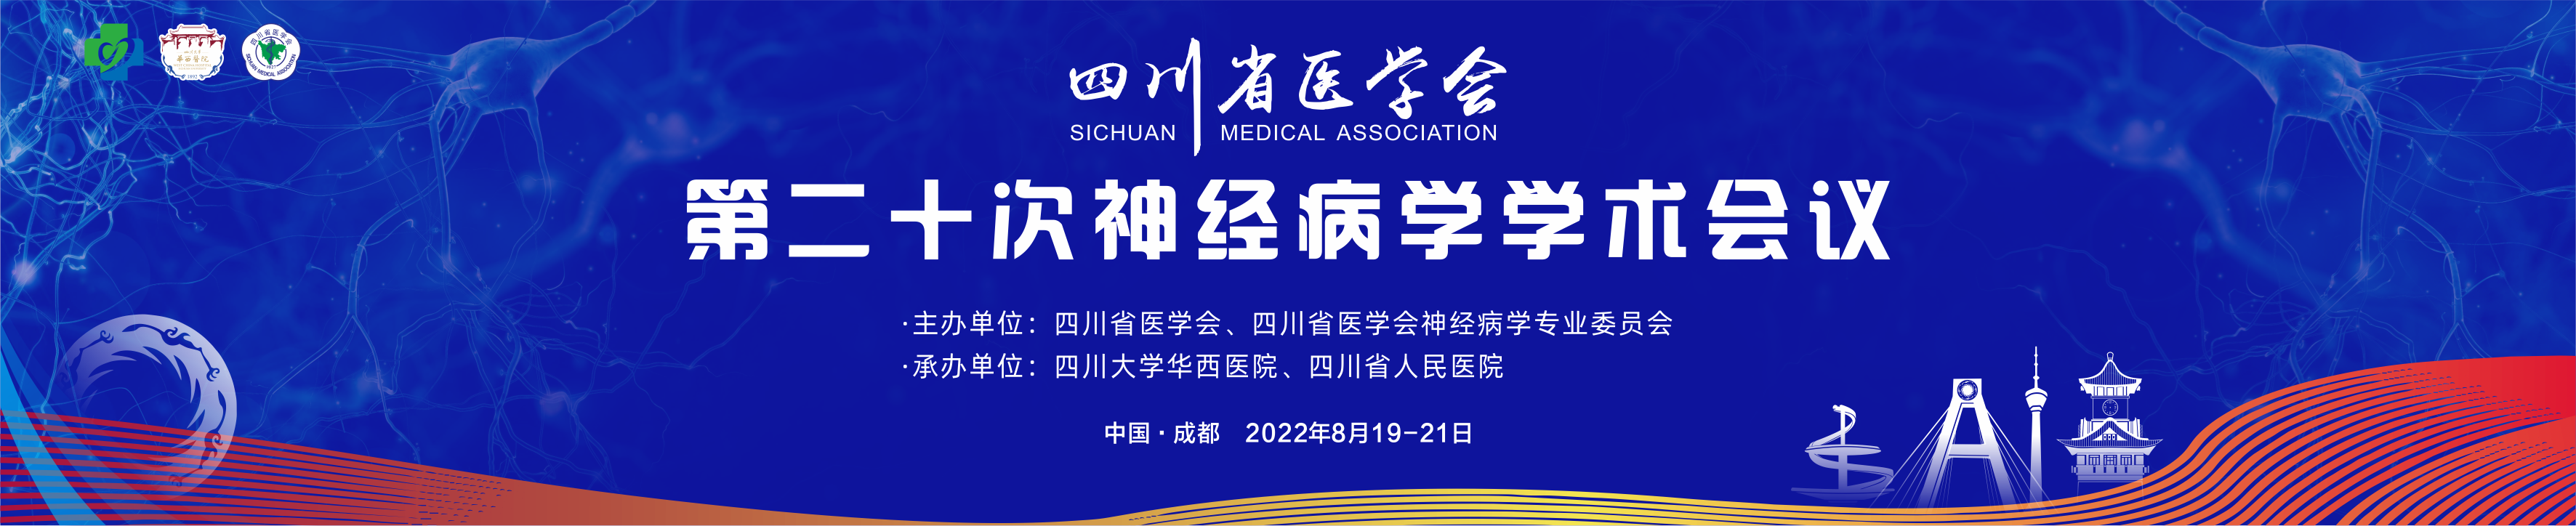 四川省医学会第二十次神经病学学术会议